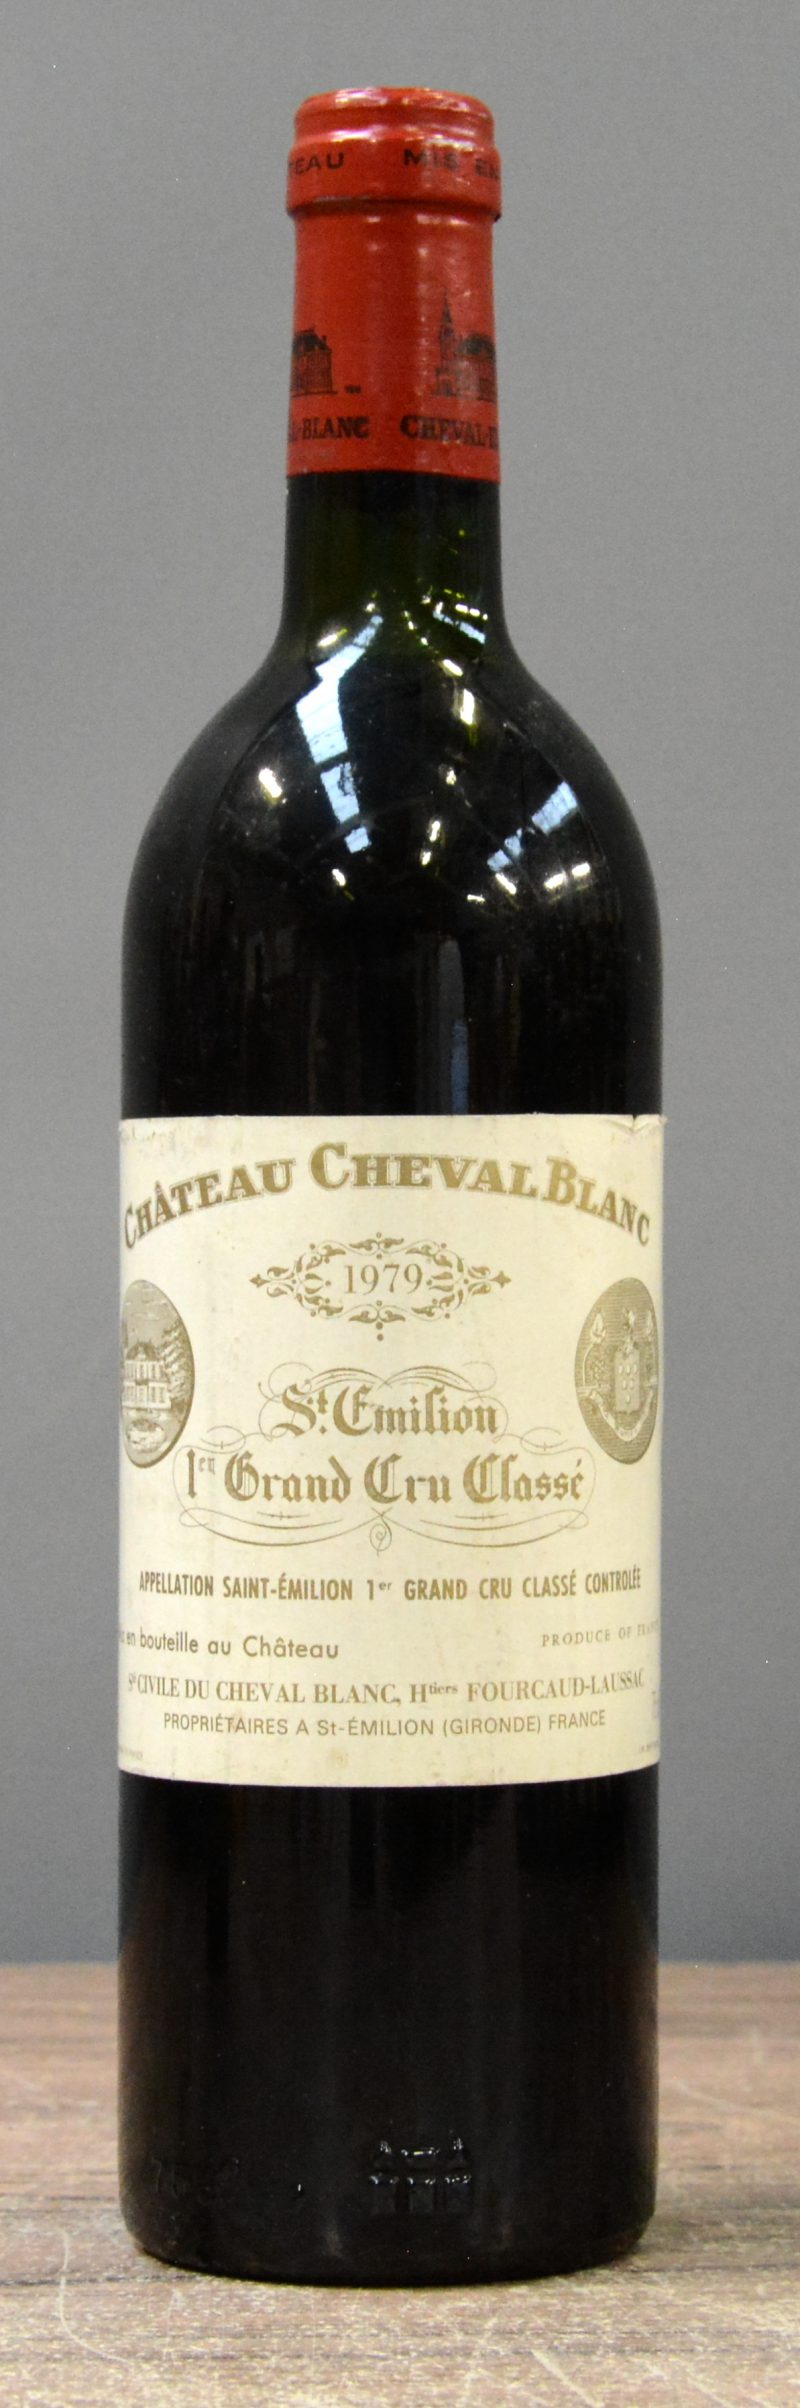 Ch. Cheval Blanc A.C. St-Emilion 1e grand cru classé   M.C.  1979  aantal: 1 Bt. Base neck